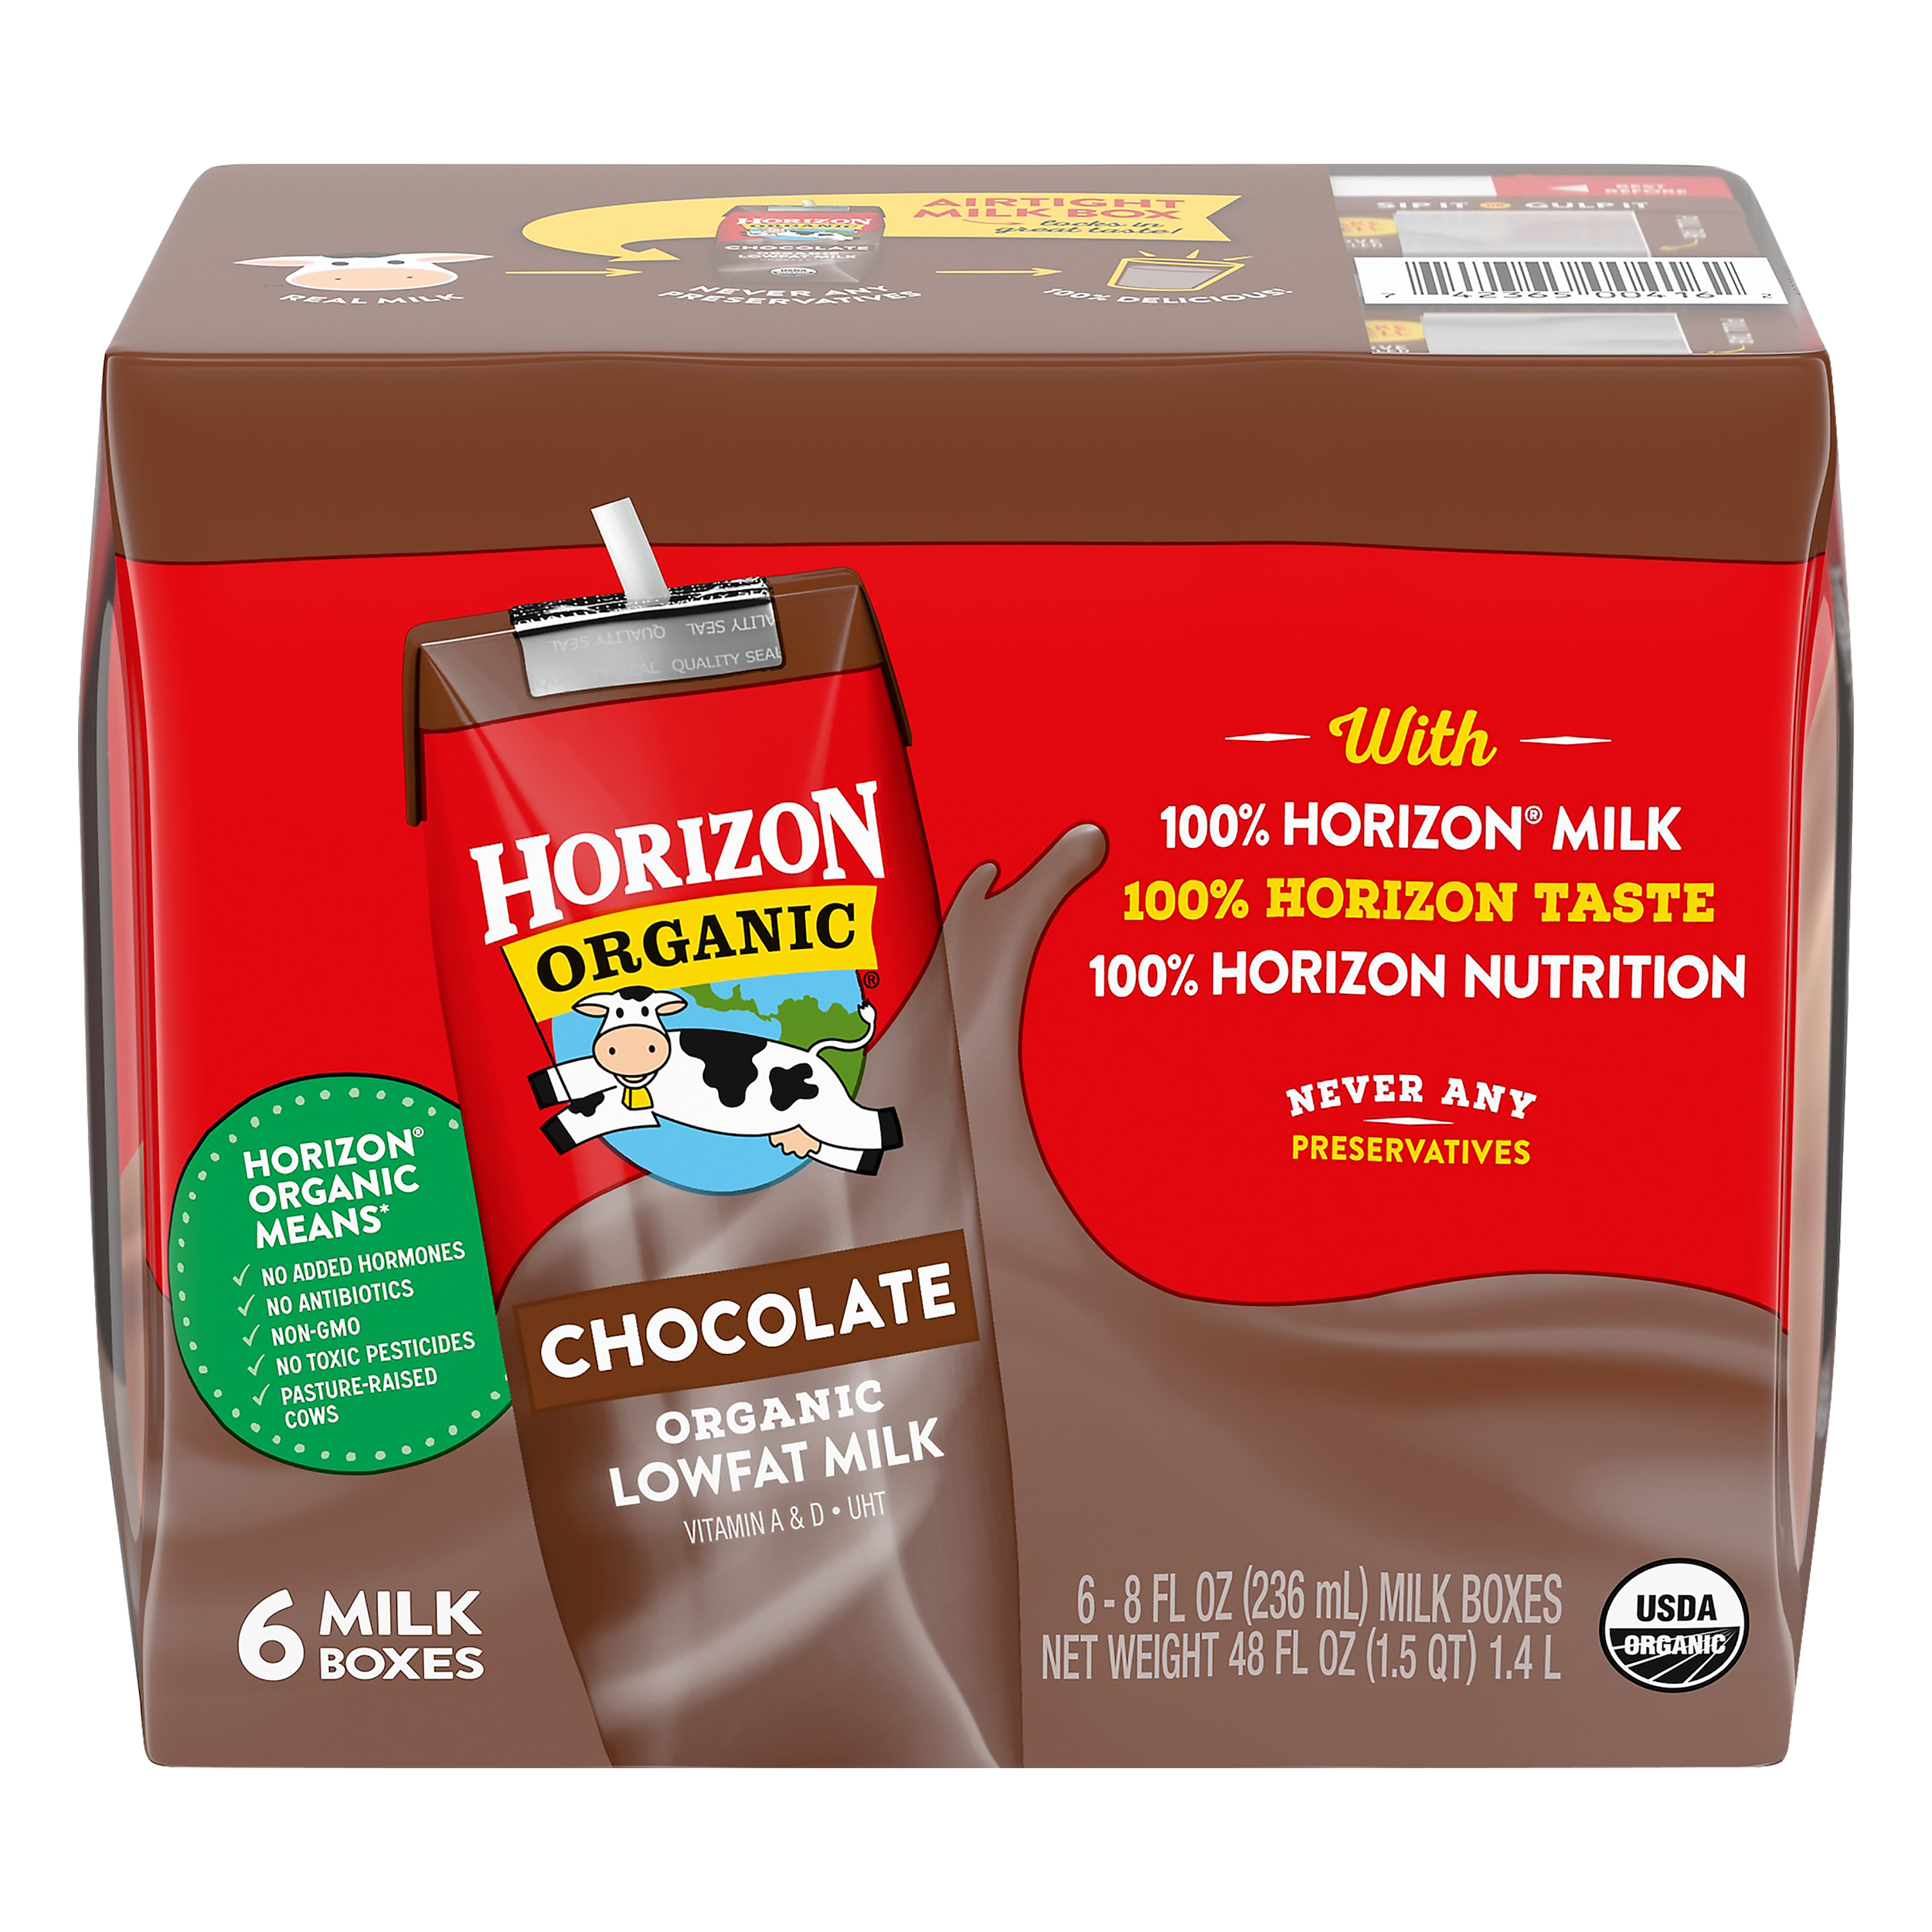 Horizon Organic 1% Chocolate Milk 3 innerpacks per case 48.0 fl